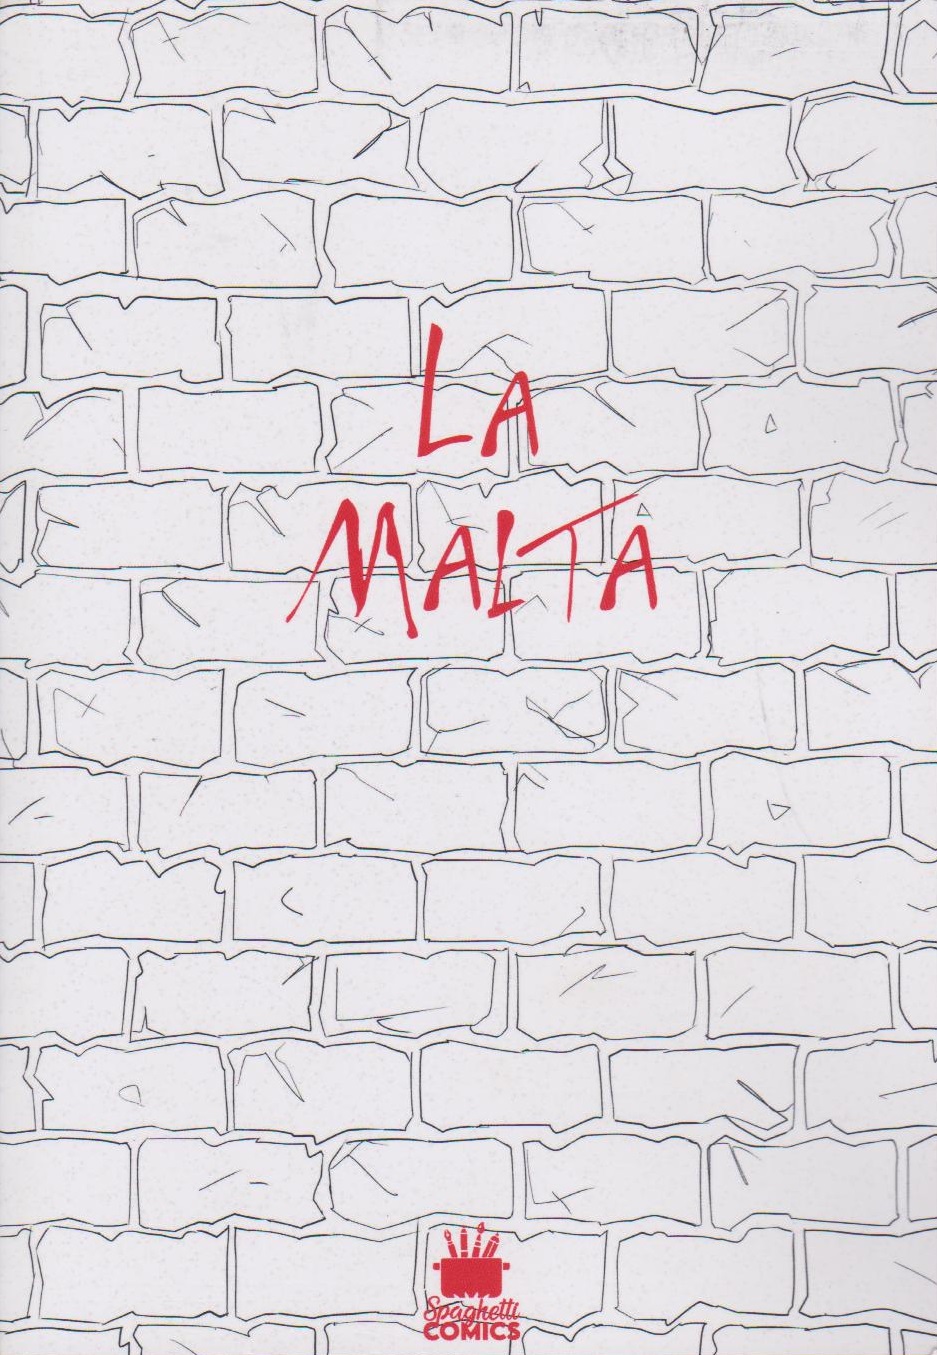 La Malta (Spaghetti Comics) - 2022